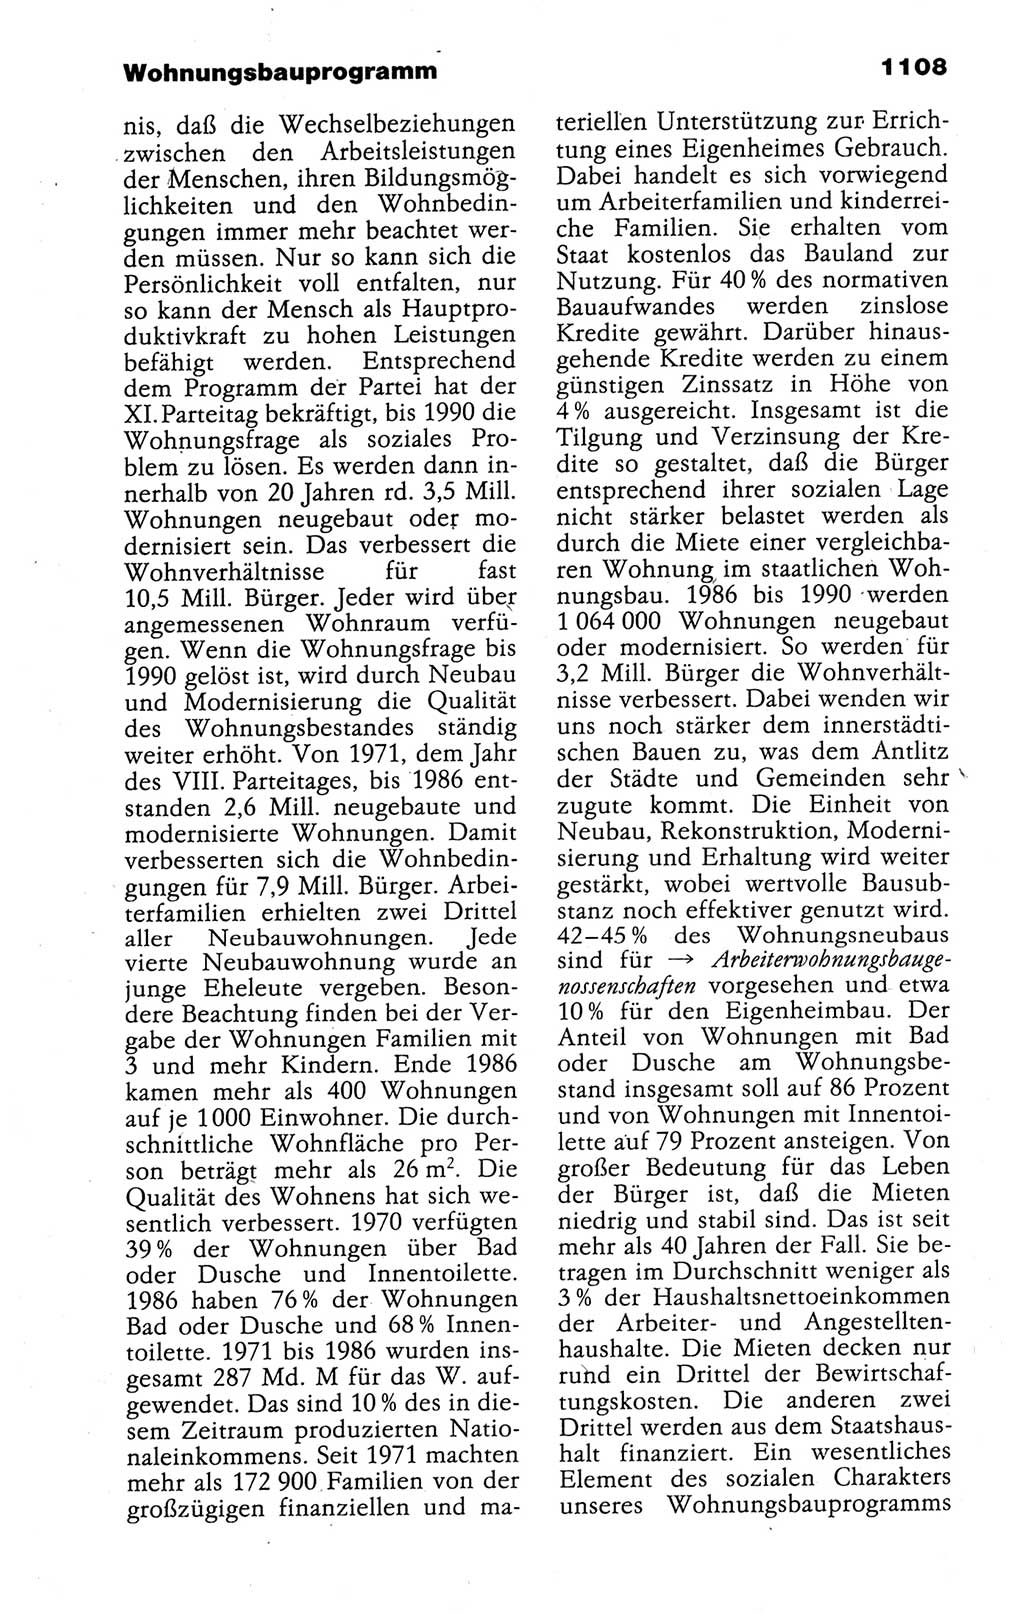 Kleines politisches Wörterbuch [Deutsche Demokratische Republik (DDR)] 1988, Seite 1108 (Kl. pol. Wb. DDR 1988, S. 1108)